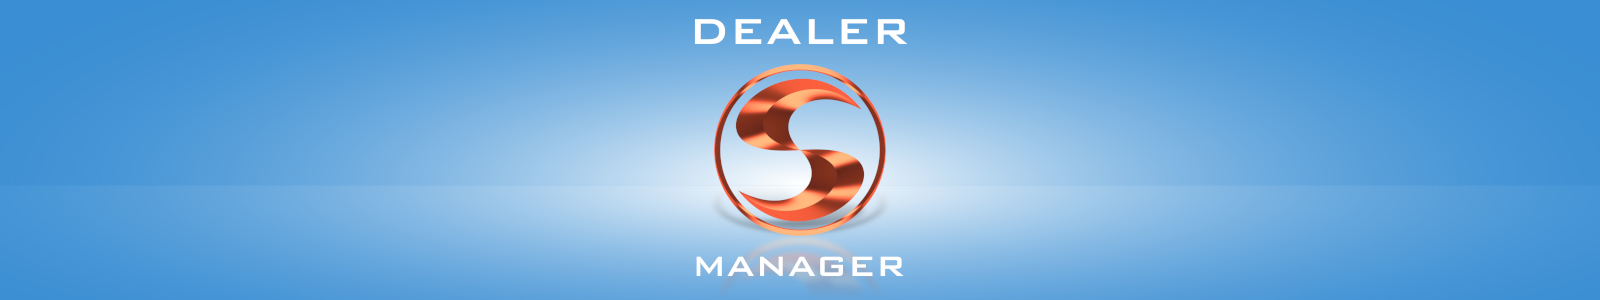 Dealer Manager - програма за продавачи на прозорци и врати